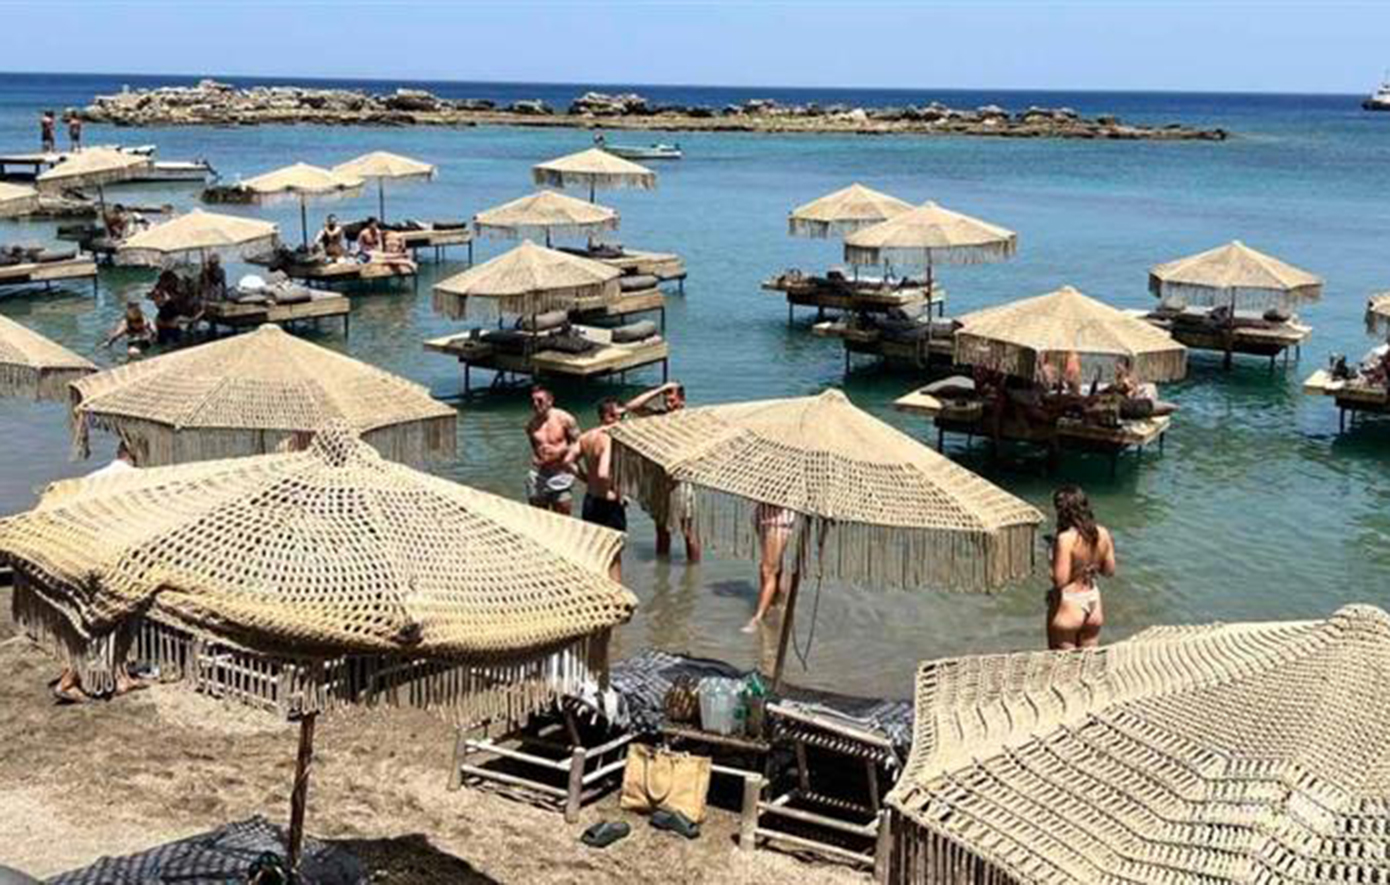 Ξηλώνουν αυθαίρετες κατασκευές σε παραλία της Ρόδου – Χατζηδάκης: Όσοι παρανομούν, θα μας βρουν απέναντι τους